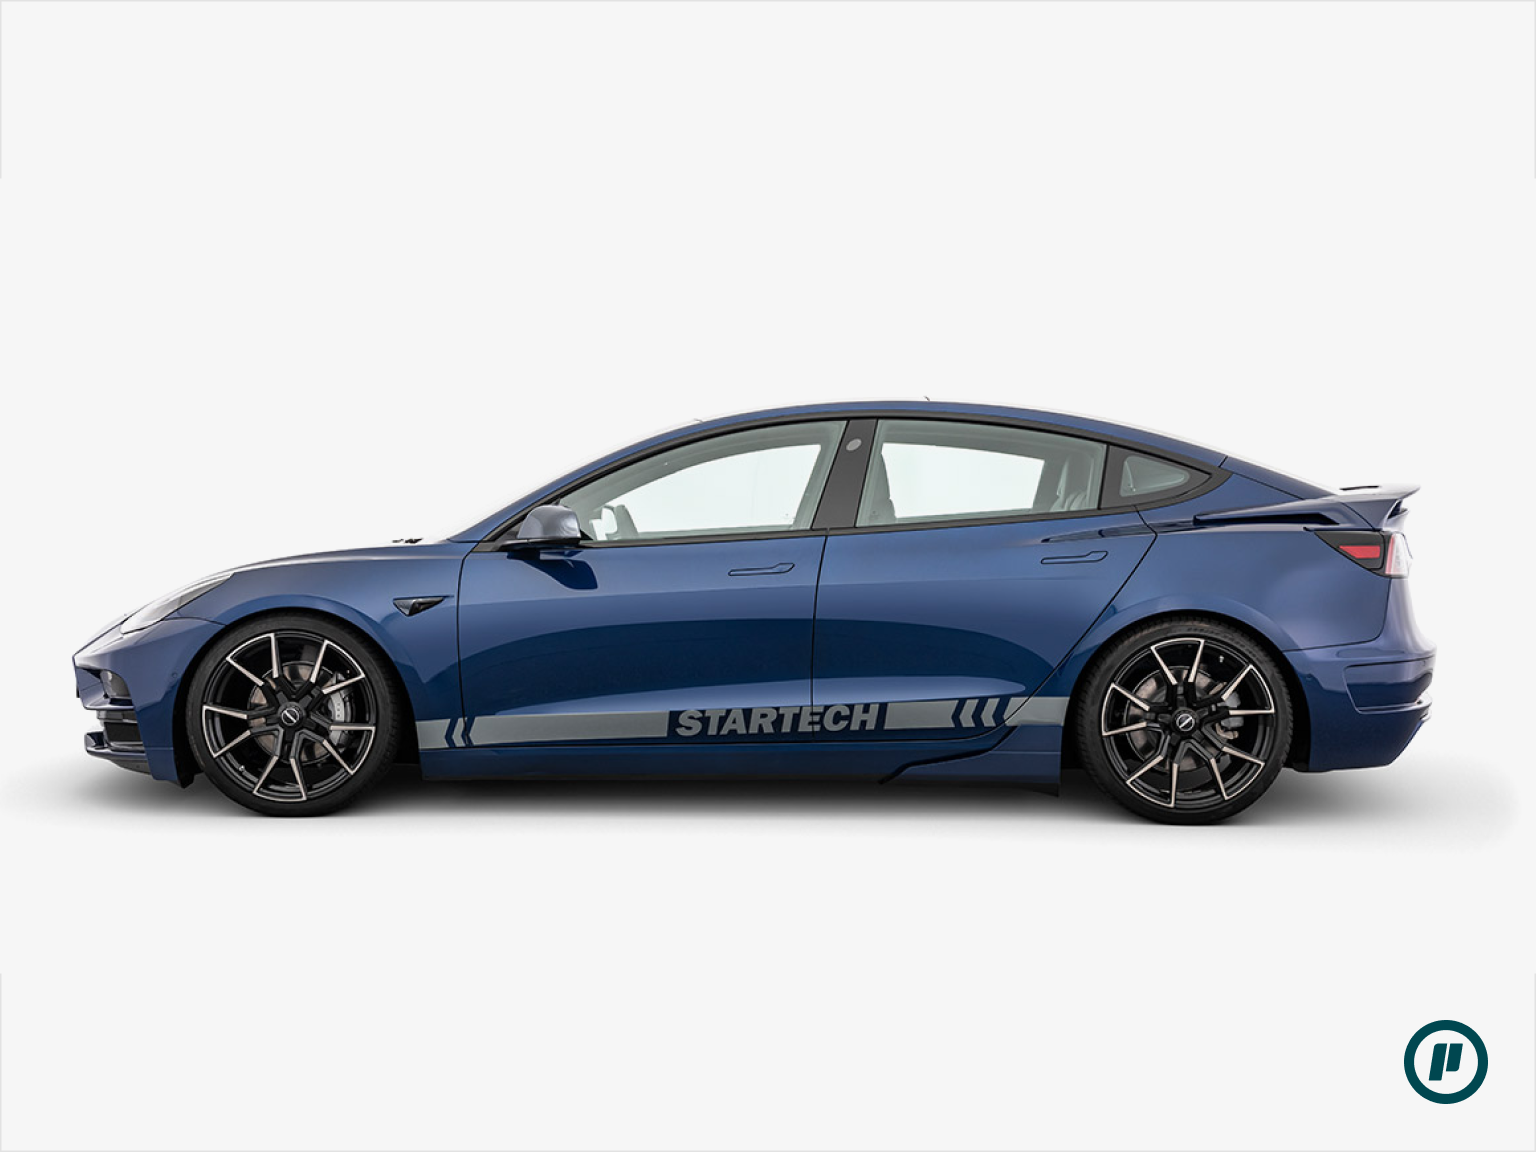 Startech Rear Spoiler for Tesla Model 3 (2017+)